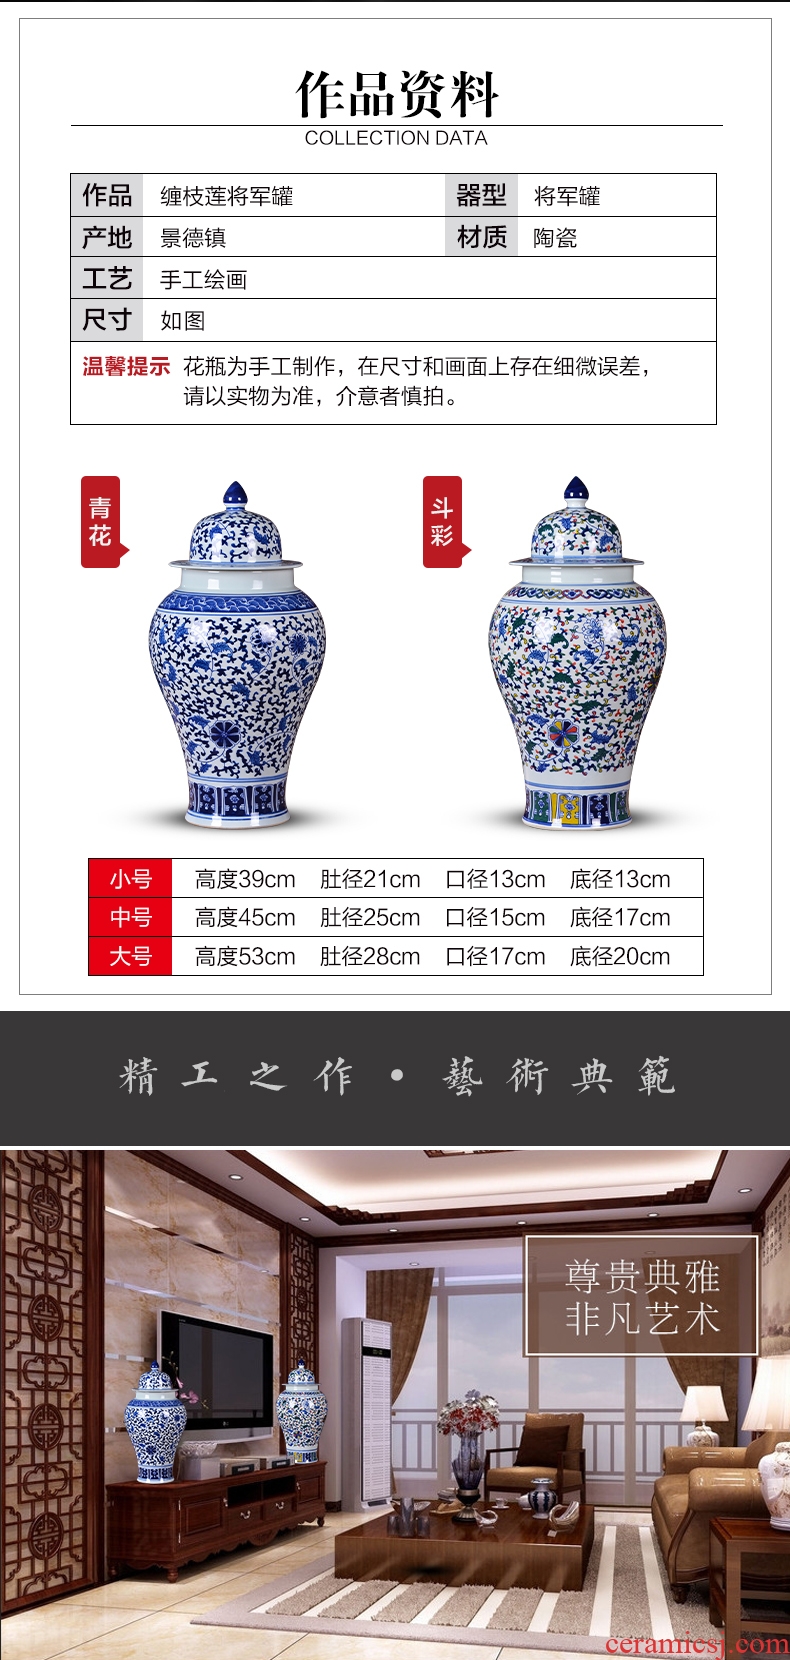 Jingdezhen ceramics of large vase color under the glaze of blue and white porcelain vase I sitting room hotel decoration 1 m - 569203857099